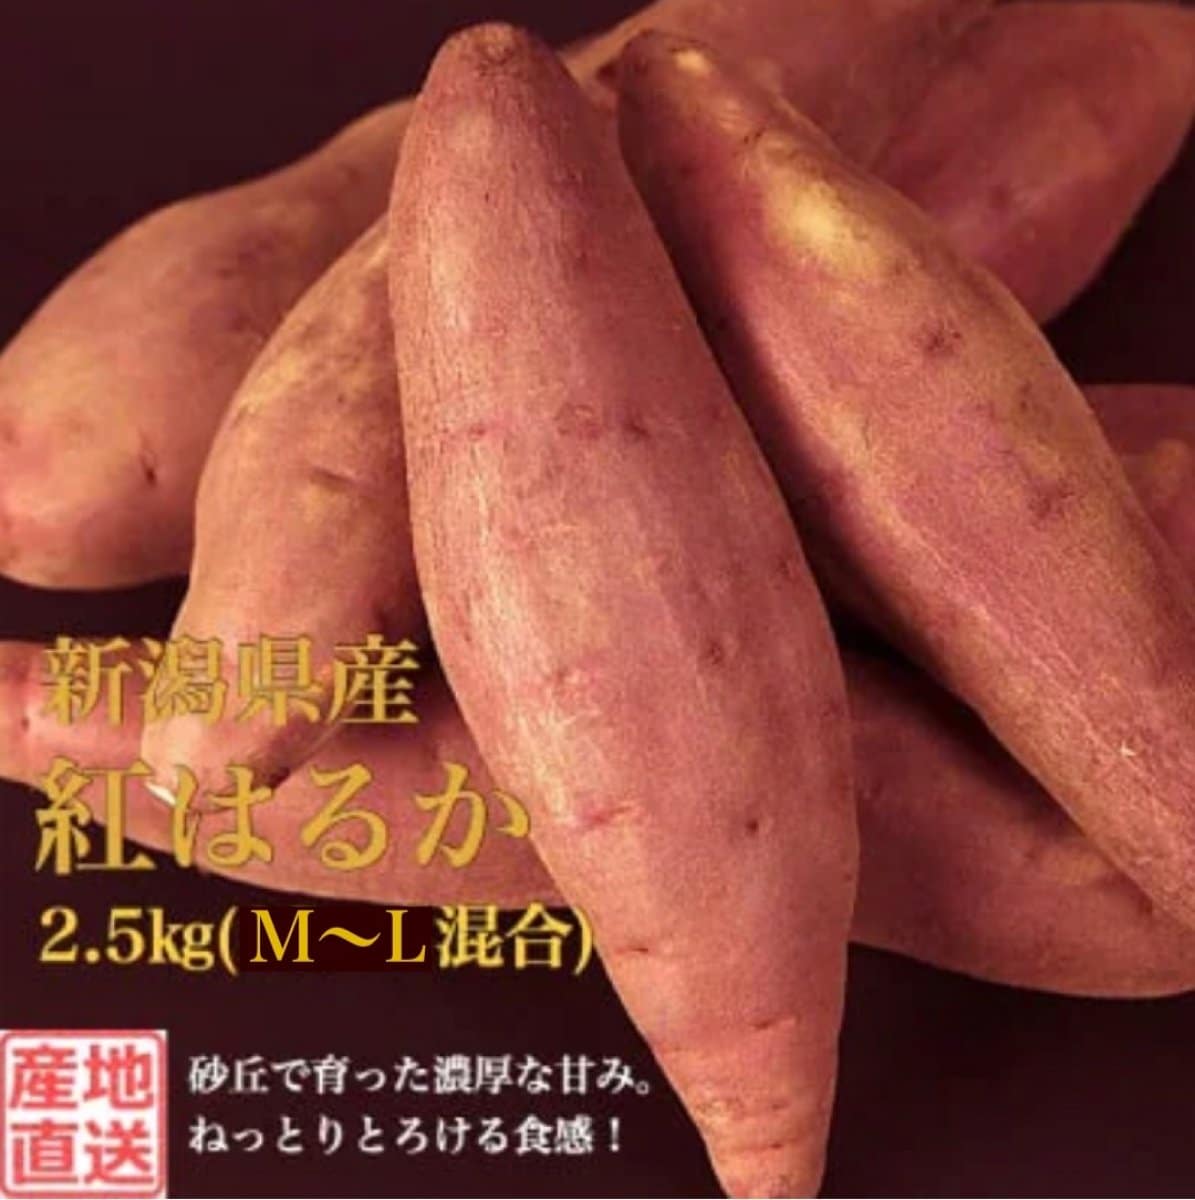 【秀品】新潟県産さつまいも2.5kg(M~L混合)